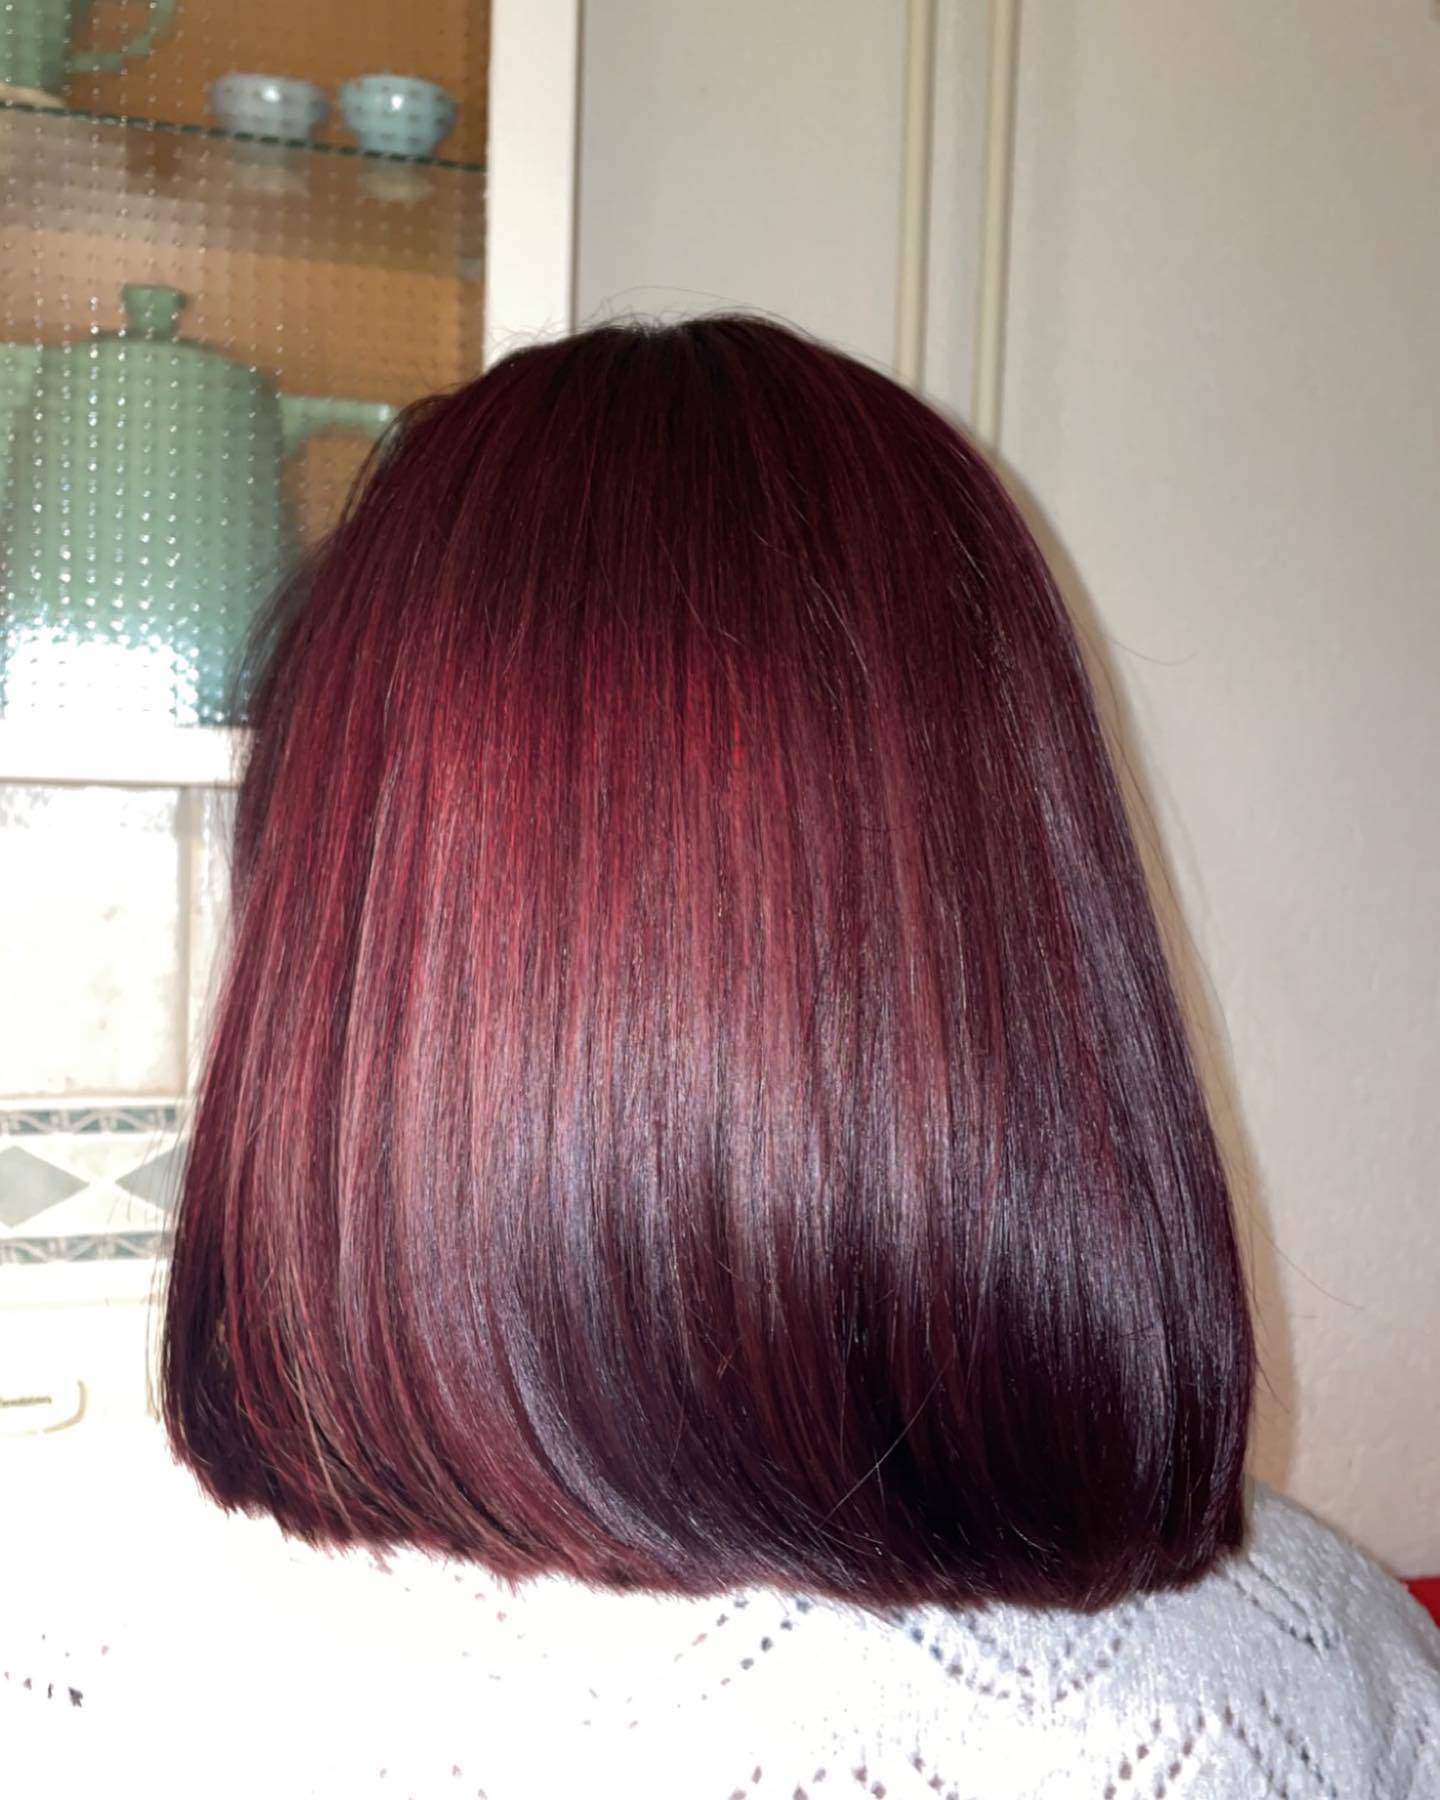 Burgundy hair color 62 burgundy hair color | burgundy hair color for women | burgundy hair color highlights Burgundy Hair Color